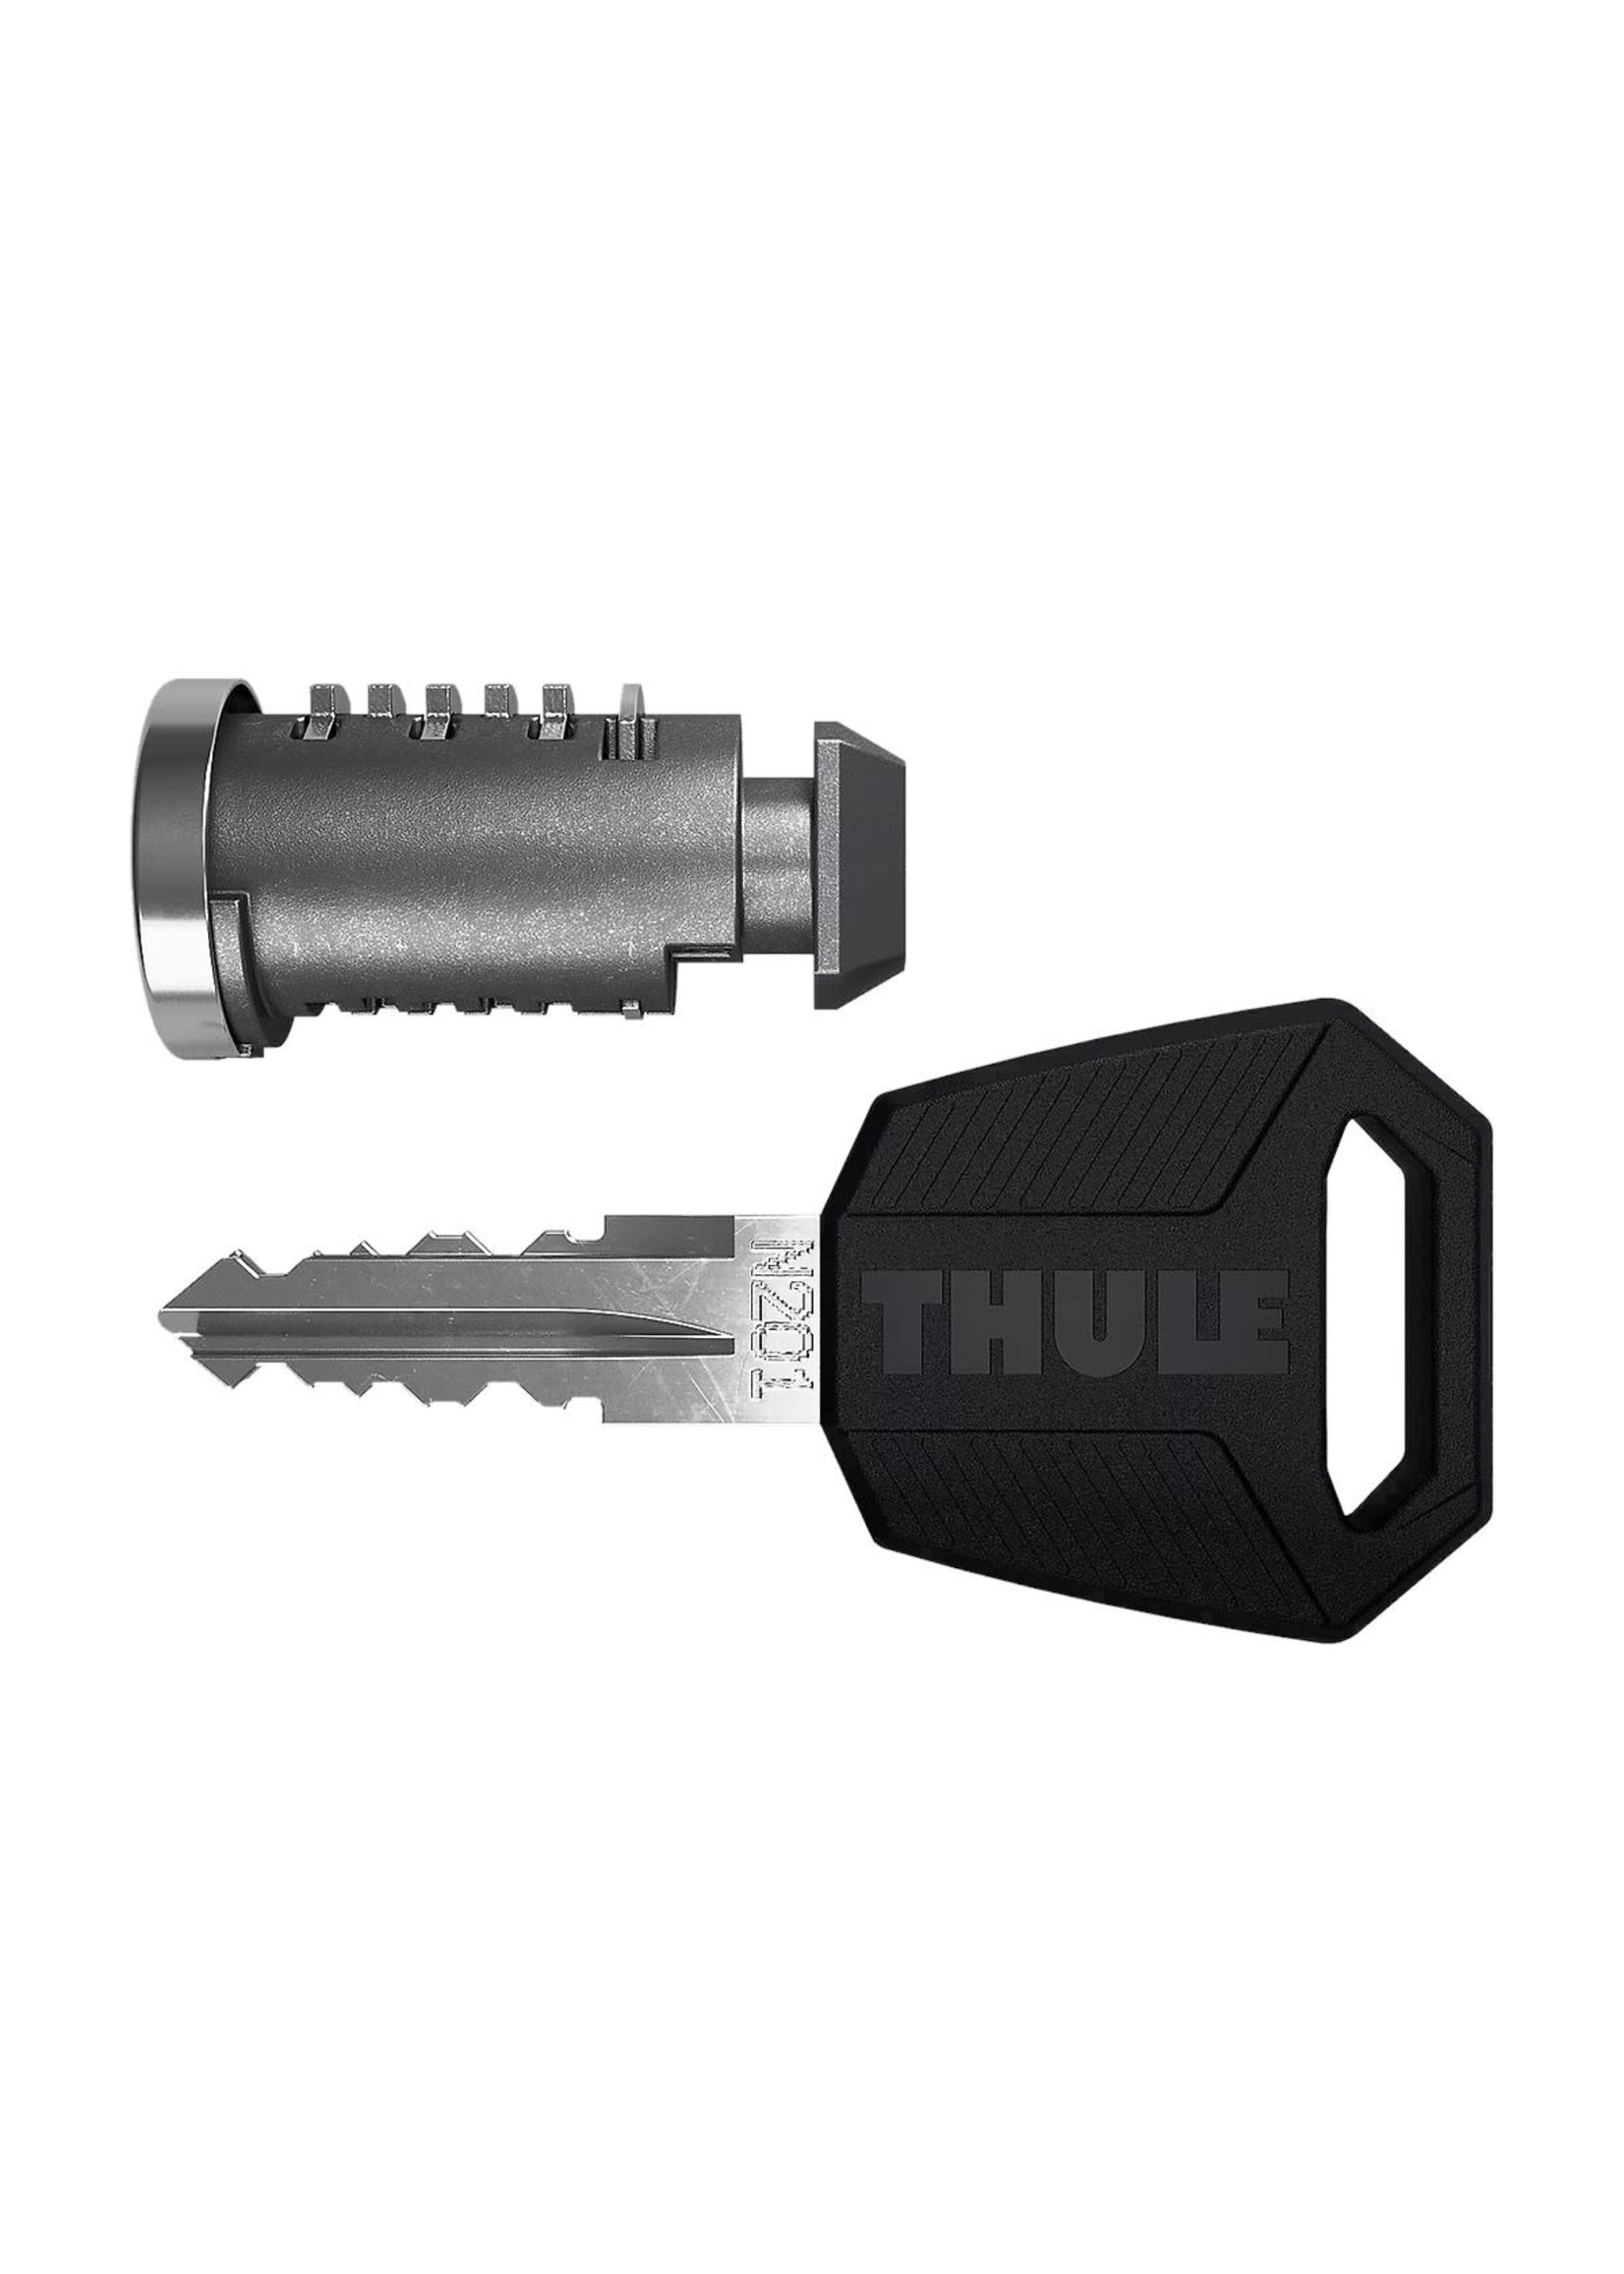 Thule Serrures One-Key System pour support de toit Thule